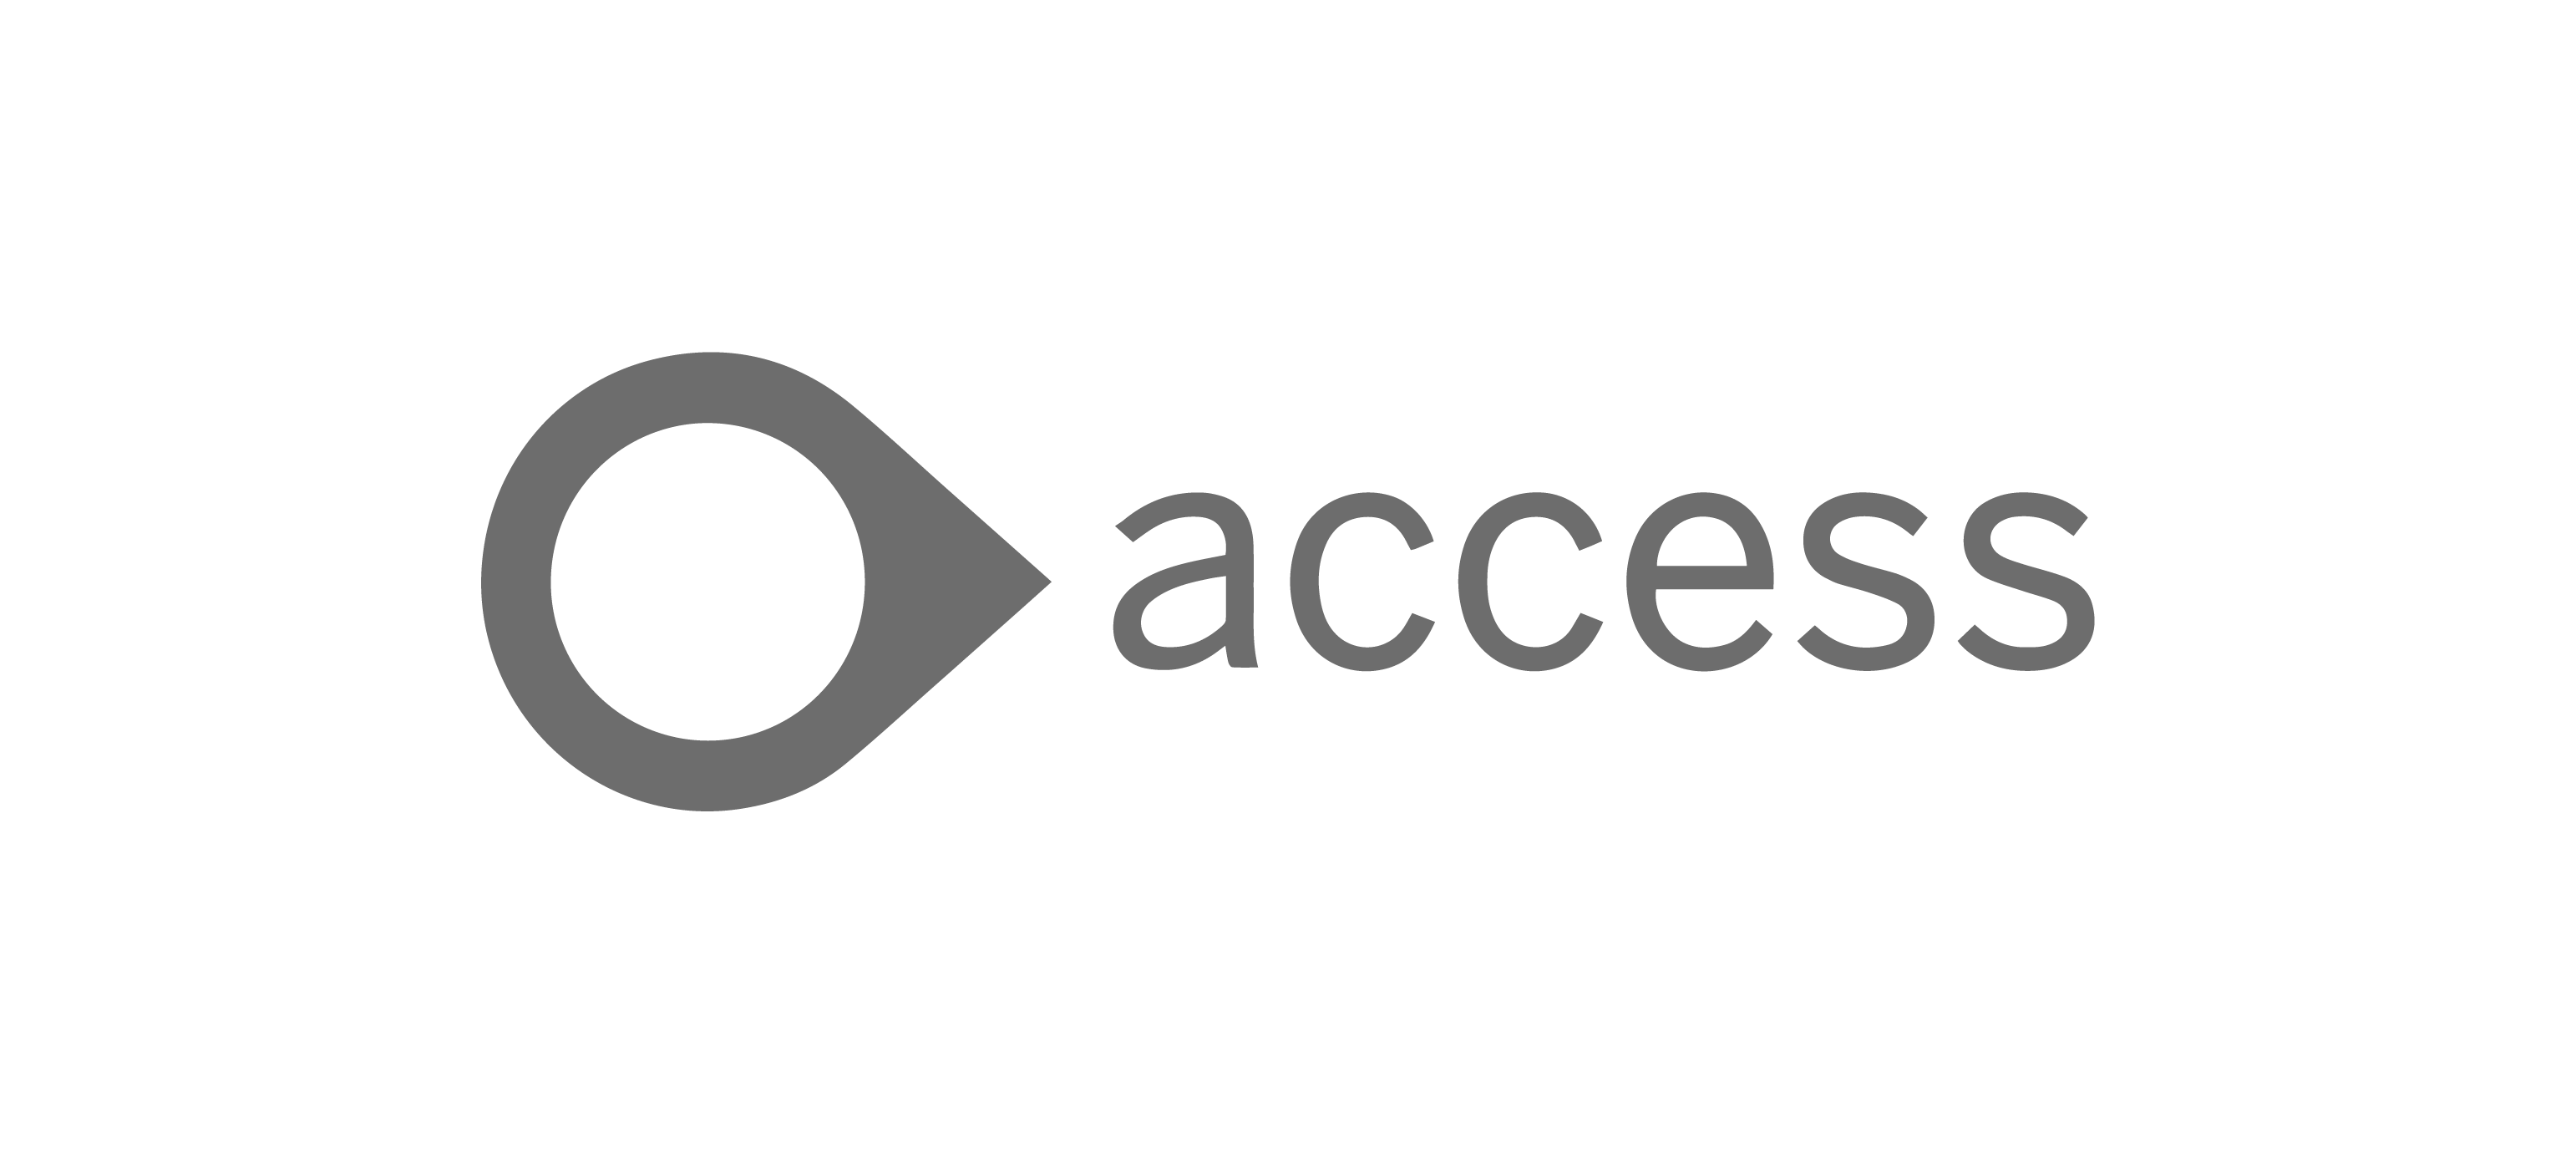 Deazy Client Logos_Access - Dark